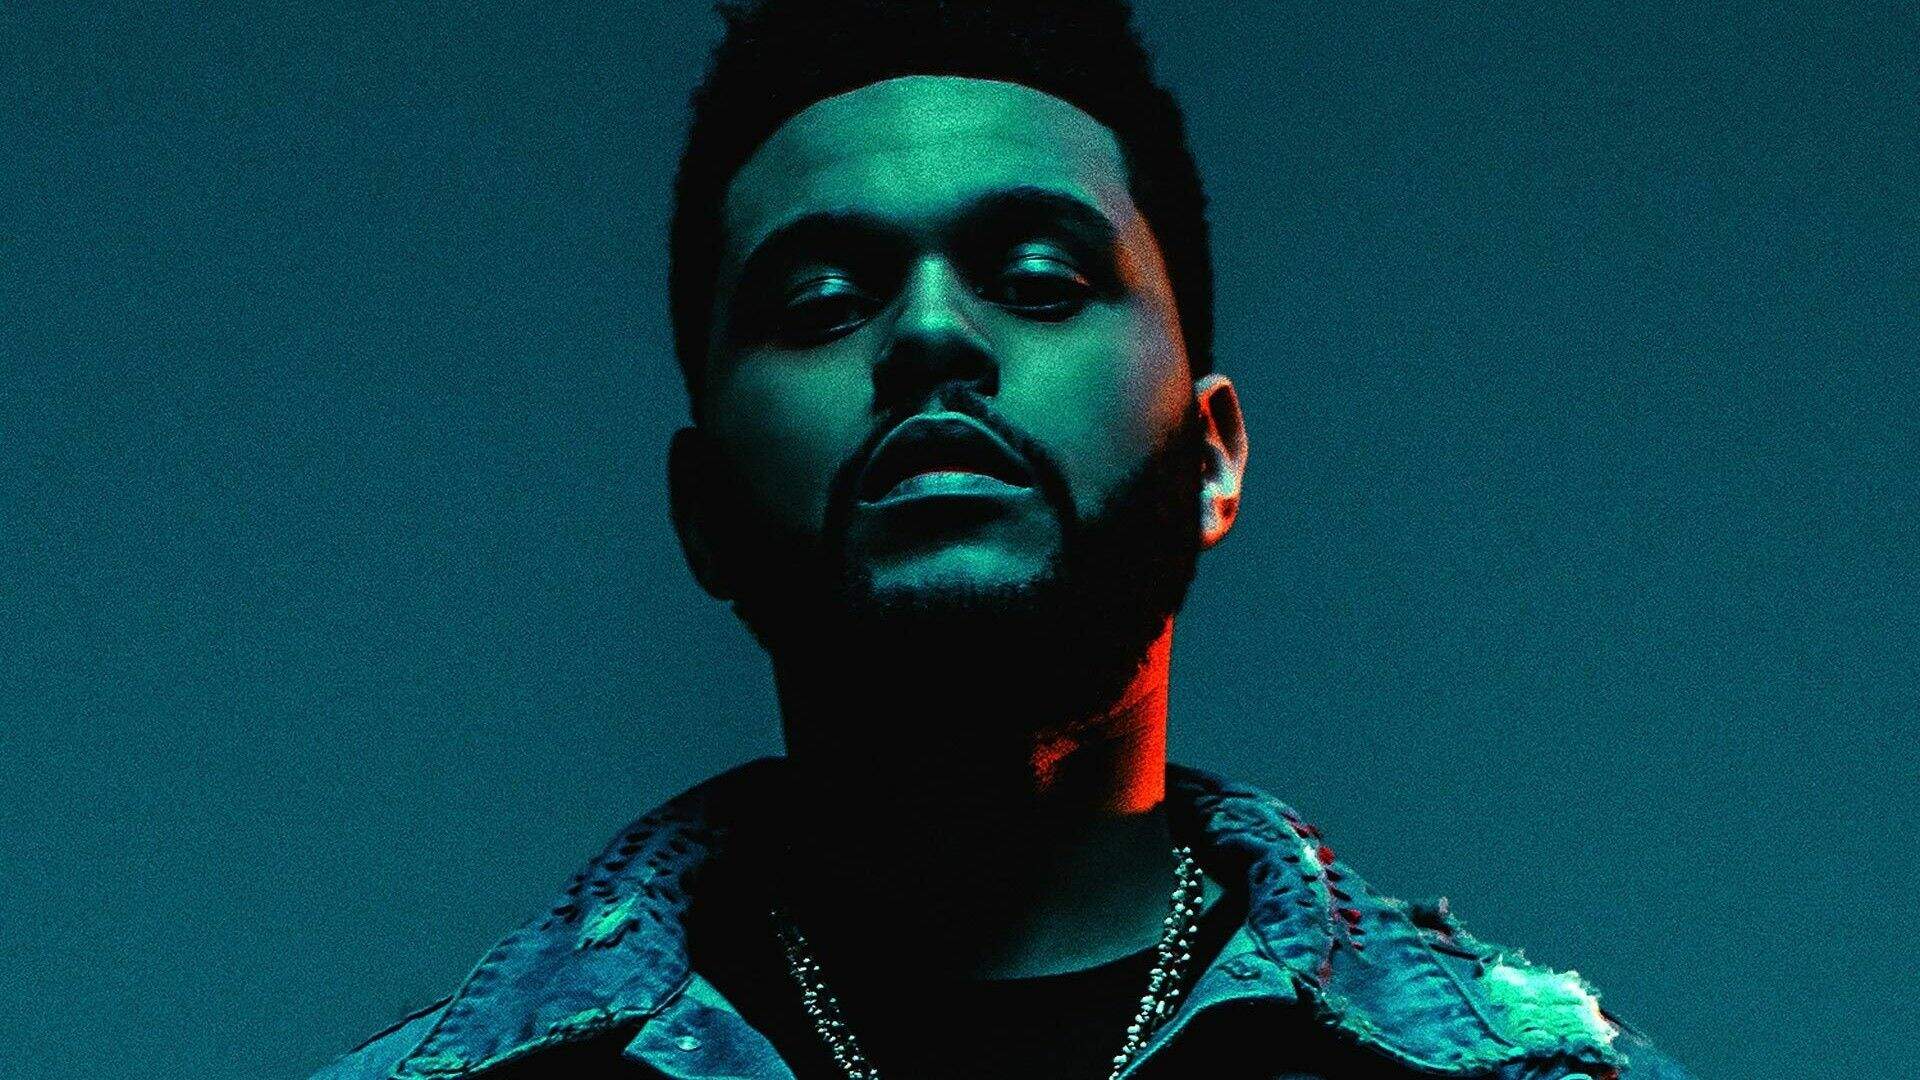 The Weeknd abandonou a música? Artista surpreende fãs ao apostar em nova carreira artística